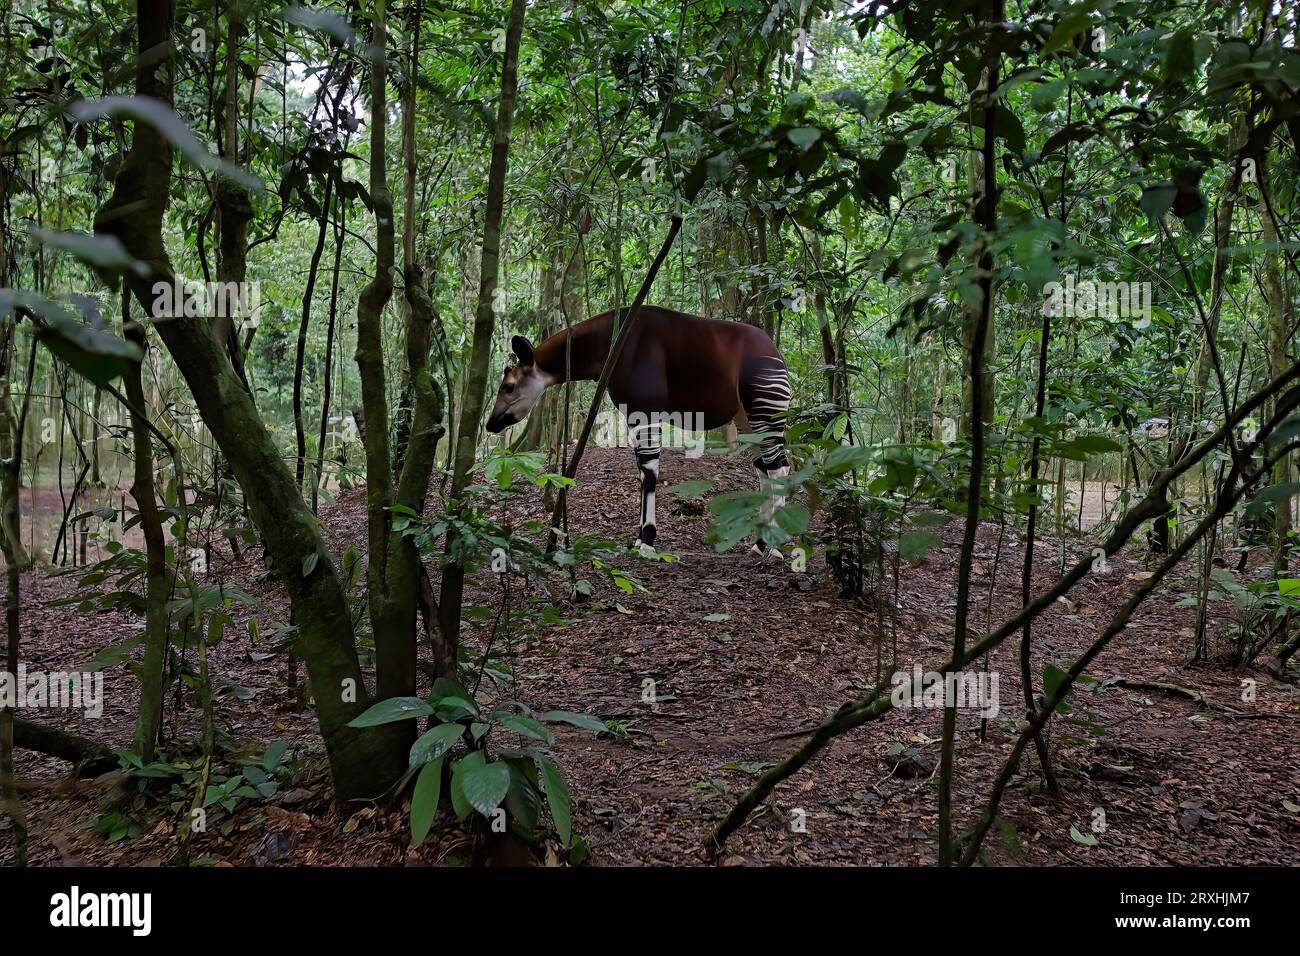 Un okapi se nourrit dans une réserve faunique. ; République démocratique du Congo, Afrique. Banque D'Images